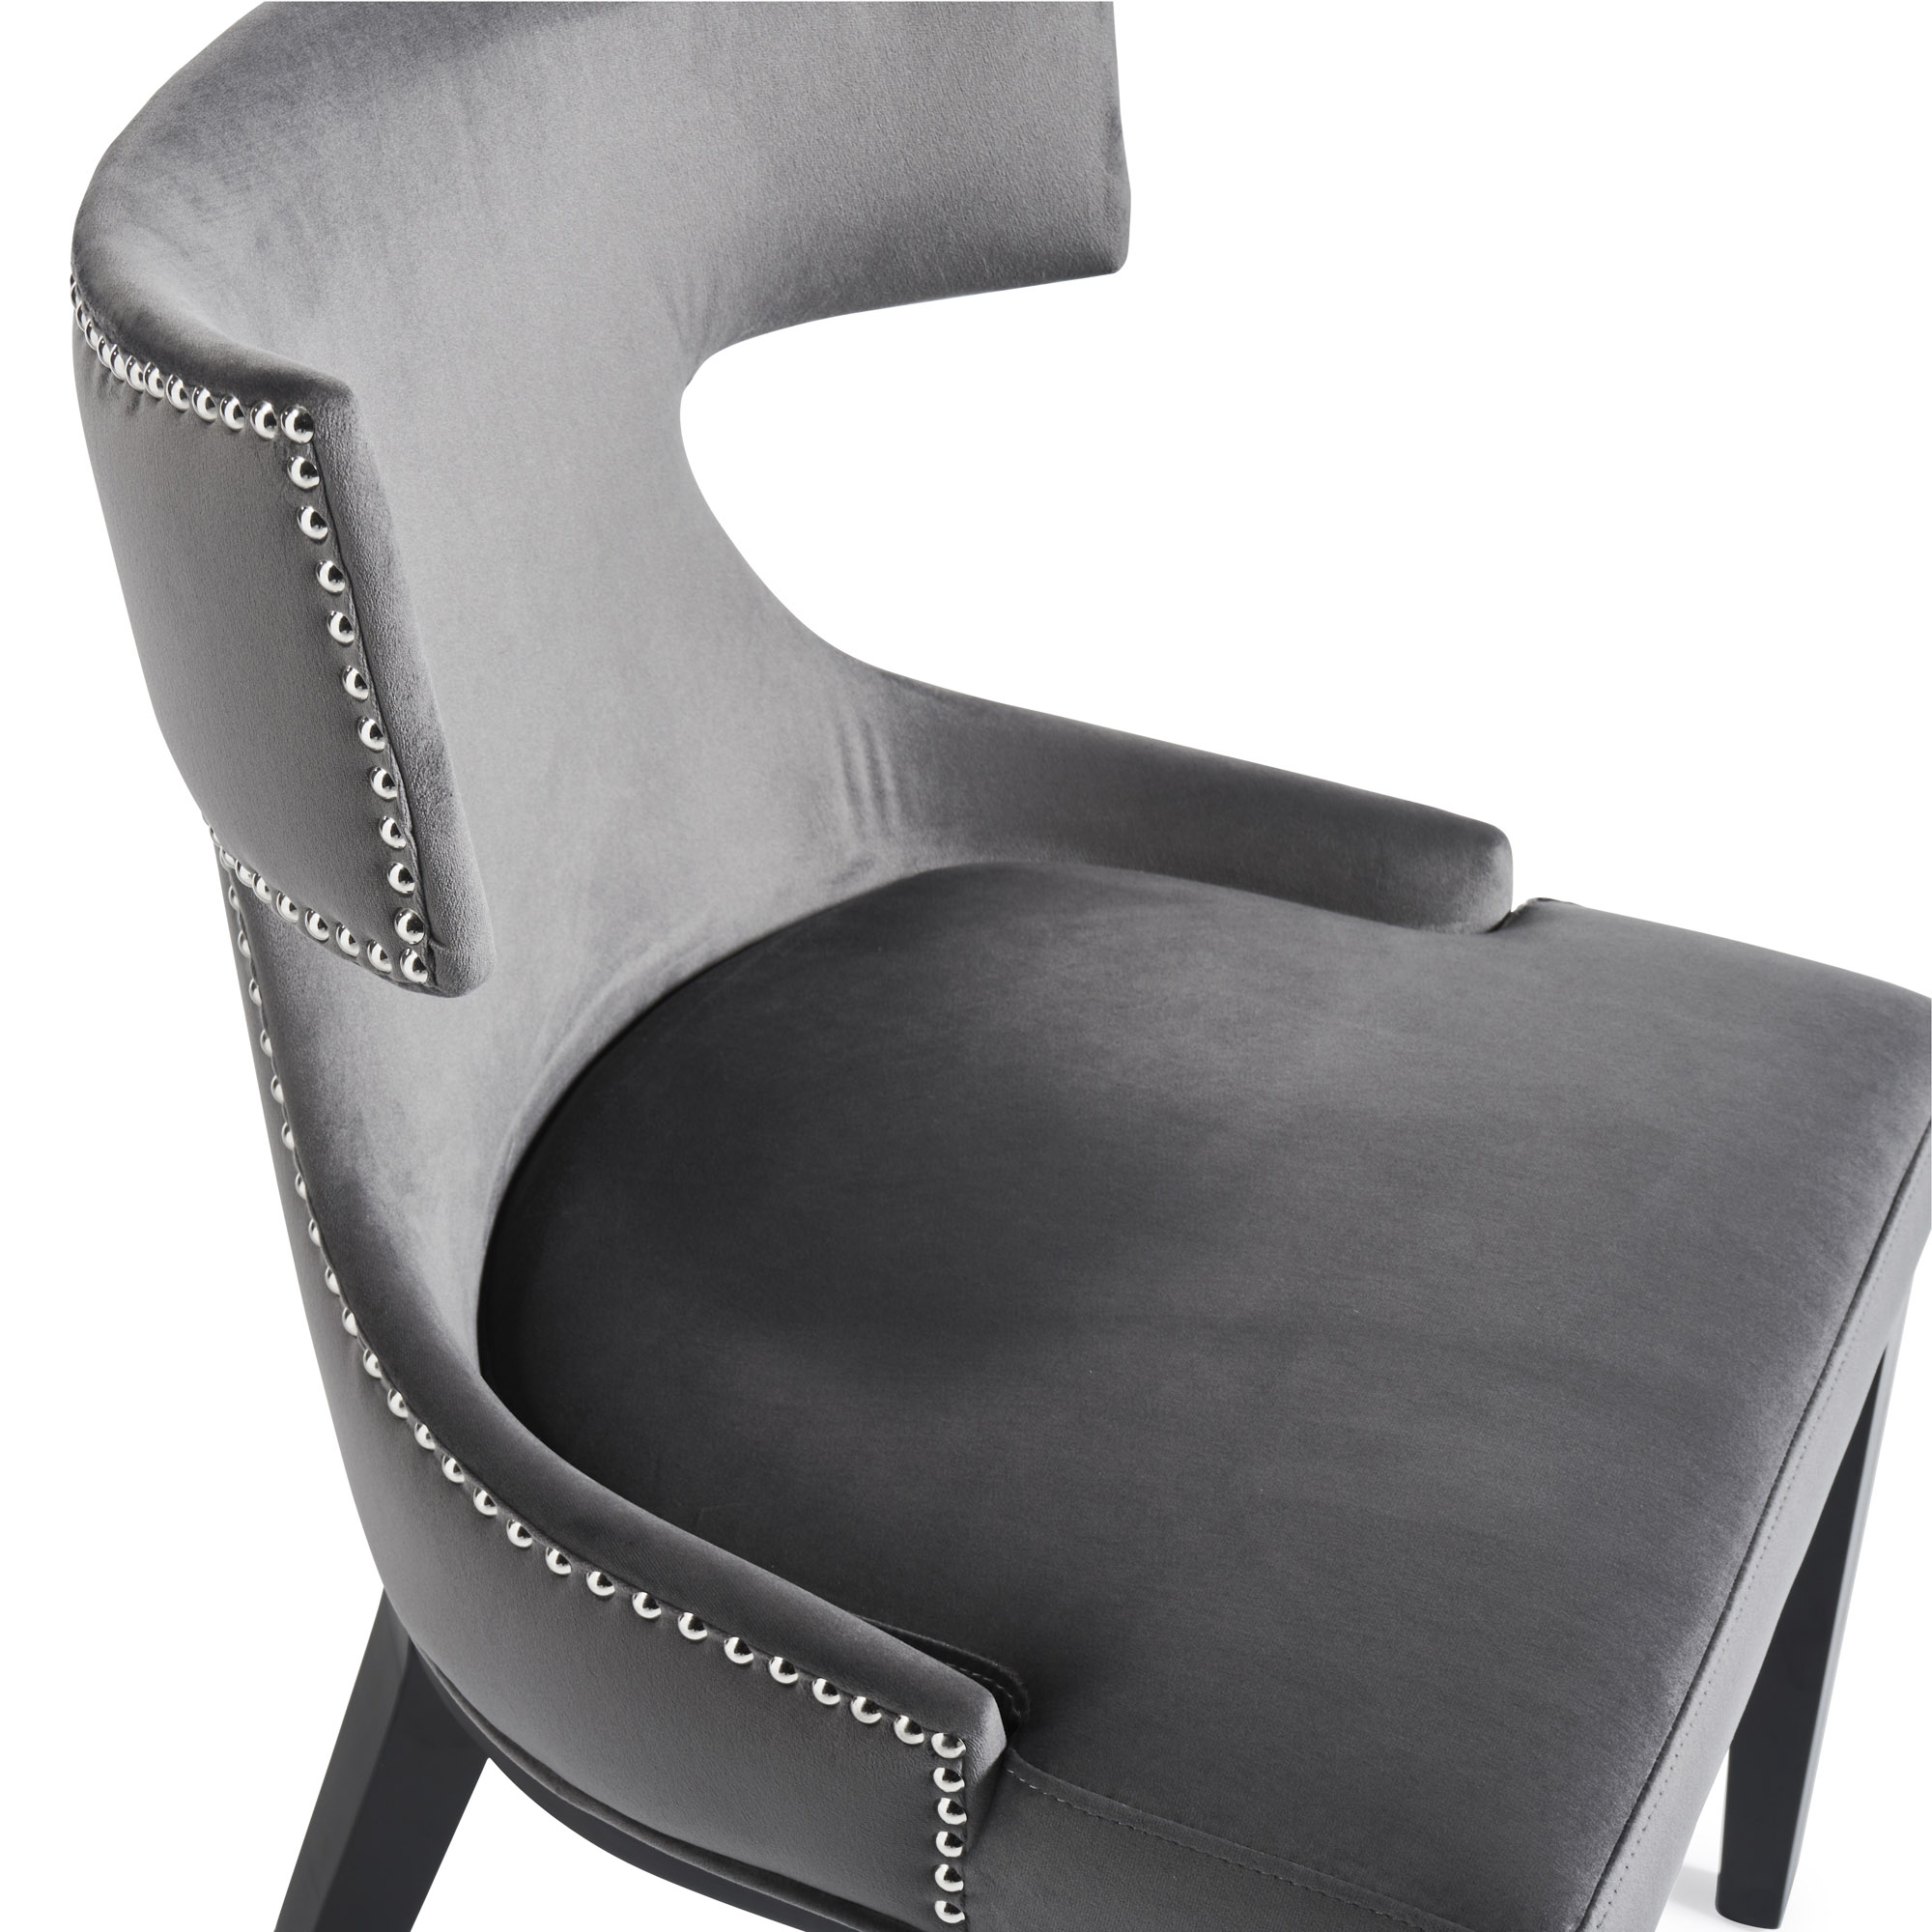 Hammersmith Upholstered Grey Velvet Dining Chair